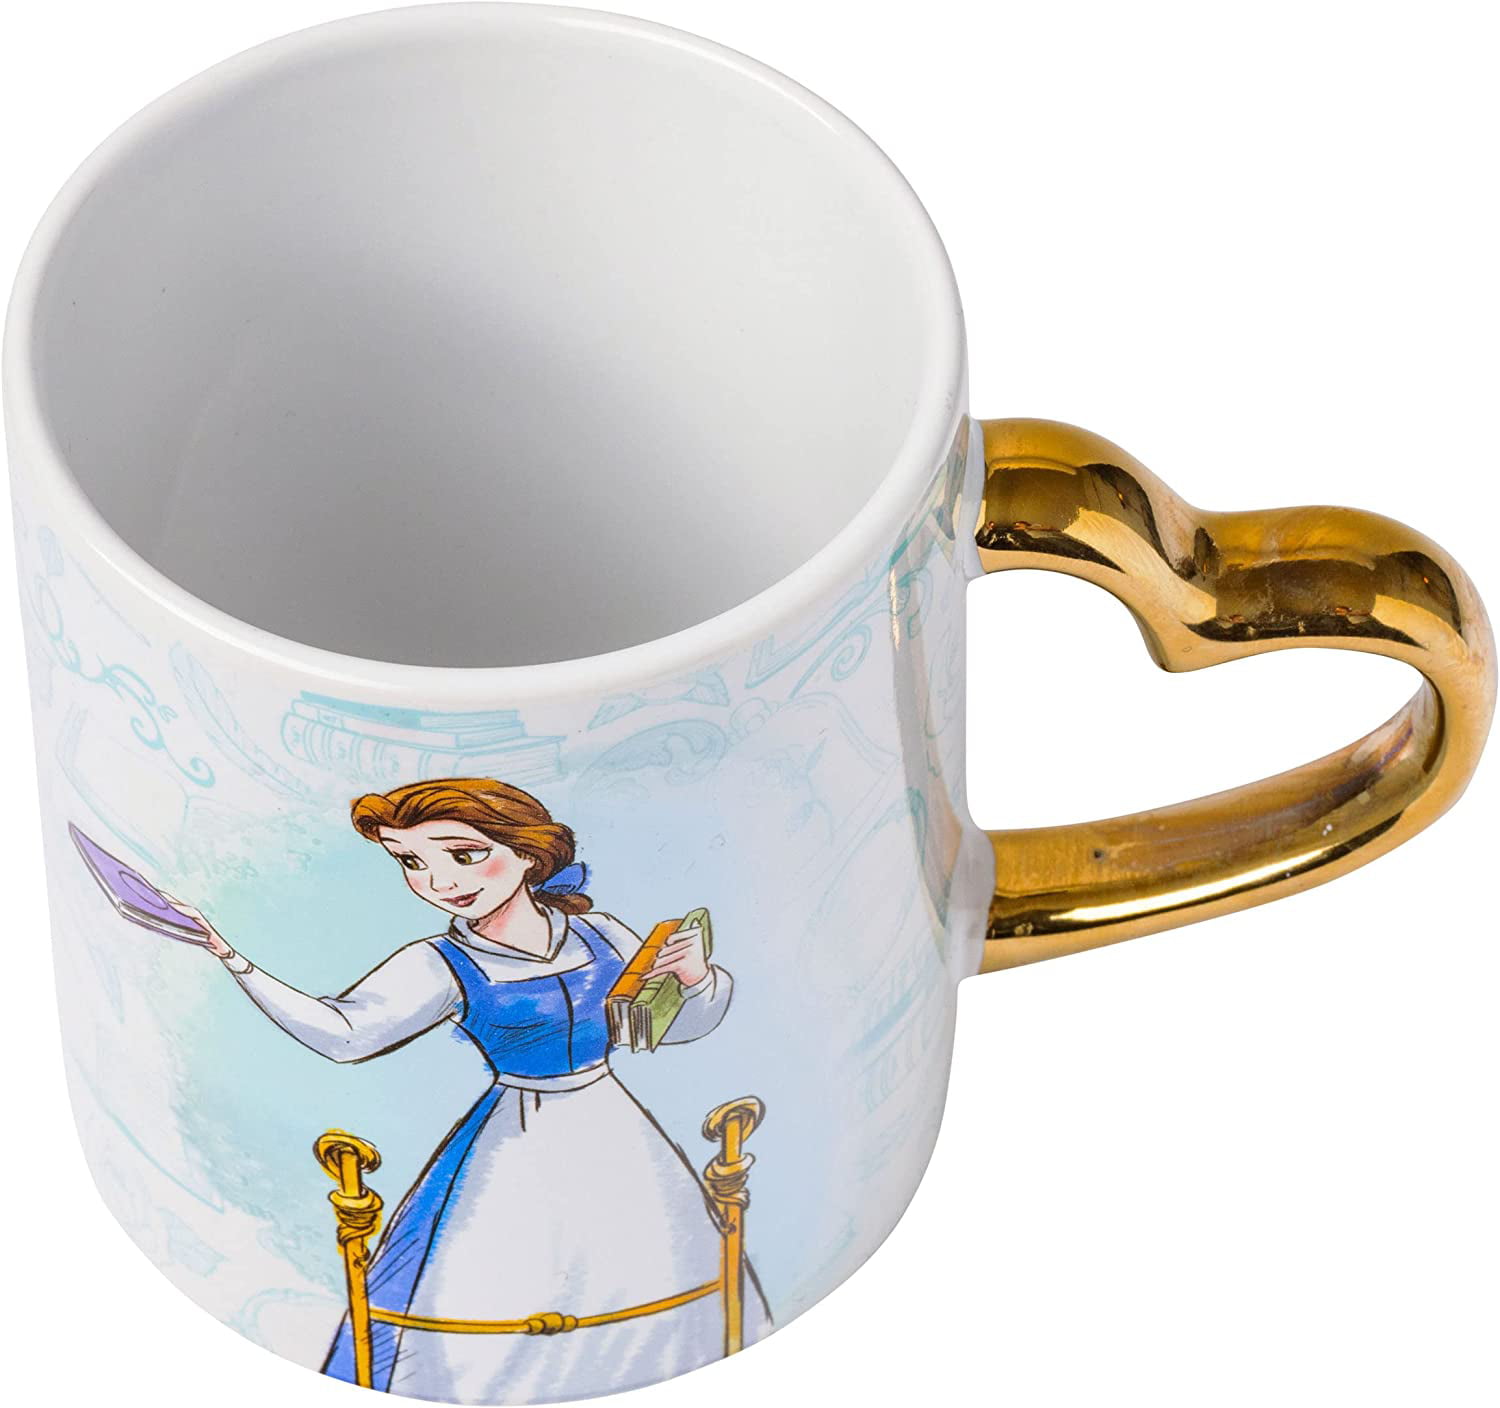 Disney Pixar's 'Up' Themed Ceramic Espresso Cup & Saucer - A Collector's  Item for Espresso and Disney Fans – Enjoy Ceramic Art